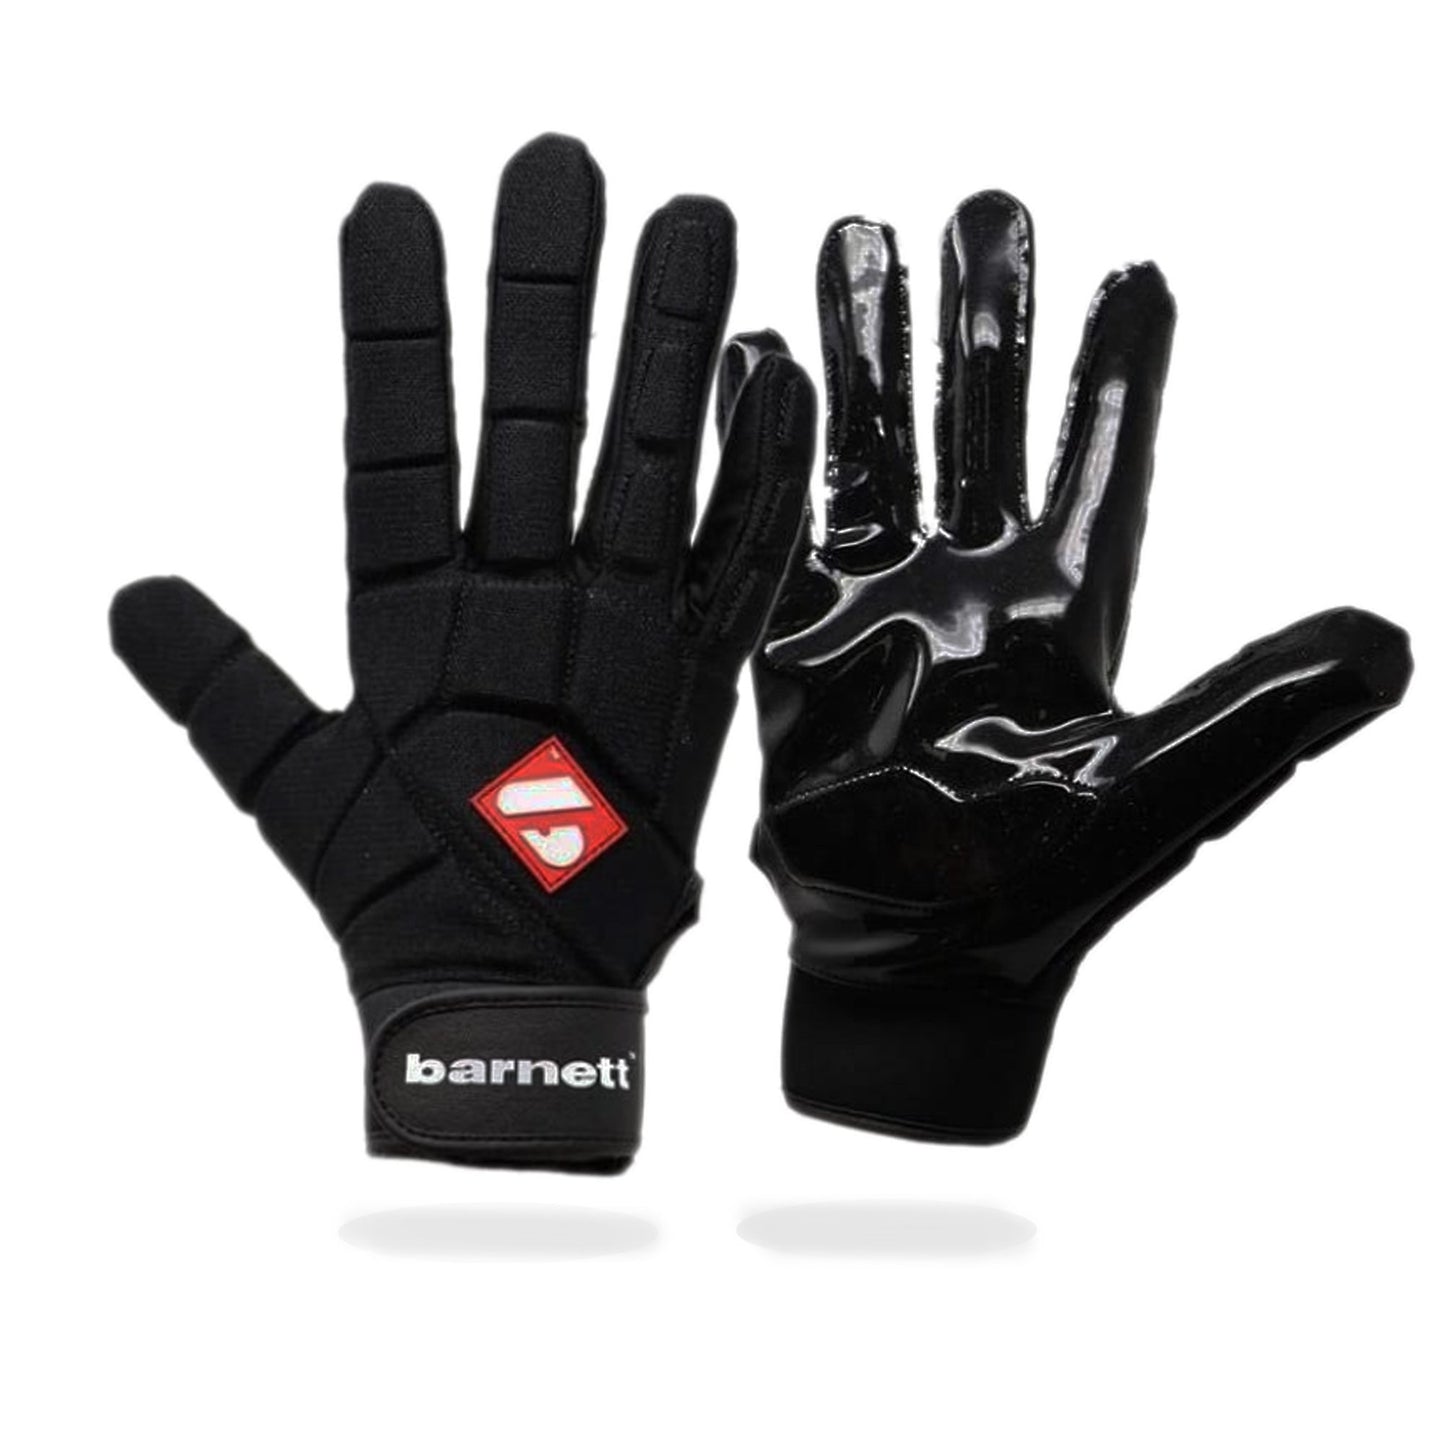 FKG-03 High level linebacker football gloves, LB,RB,TE, Black